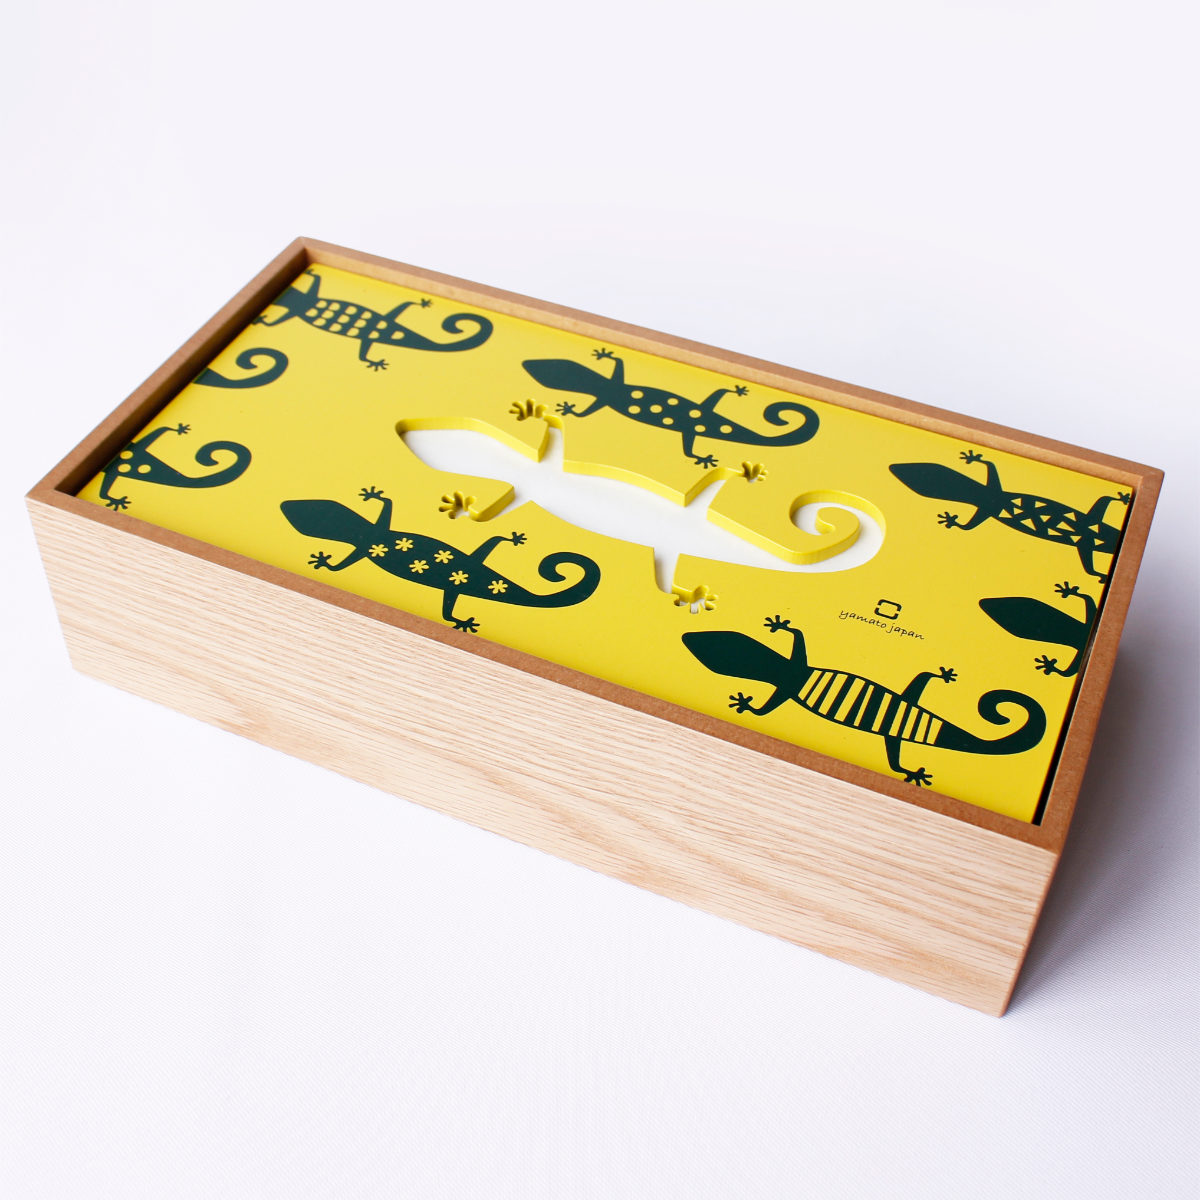 ティッシュ ケース 木製 ヤマト工芸 yamato hako トカゲ （ ティッシュケース ティッシュボックス かわいい アニマル とかげ ティッシュ